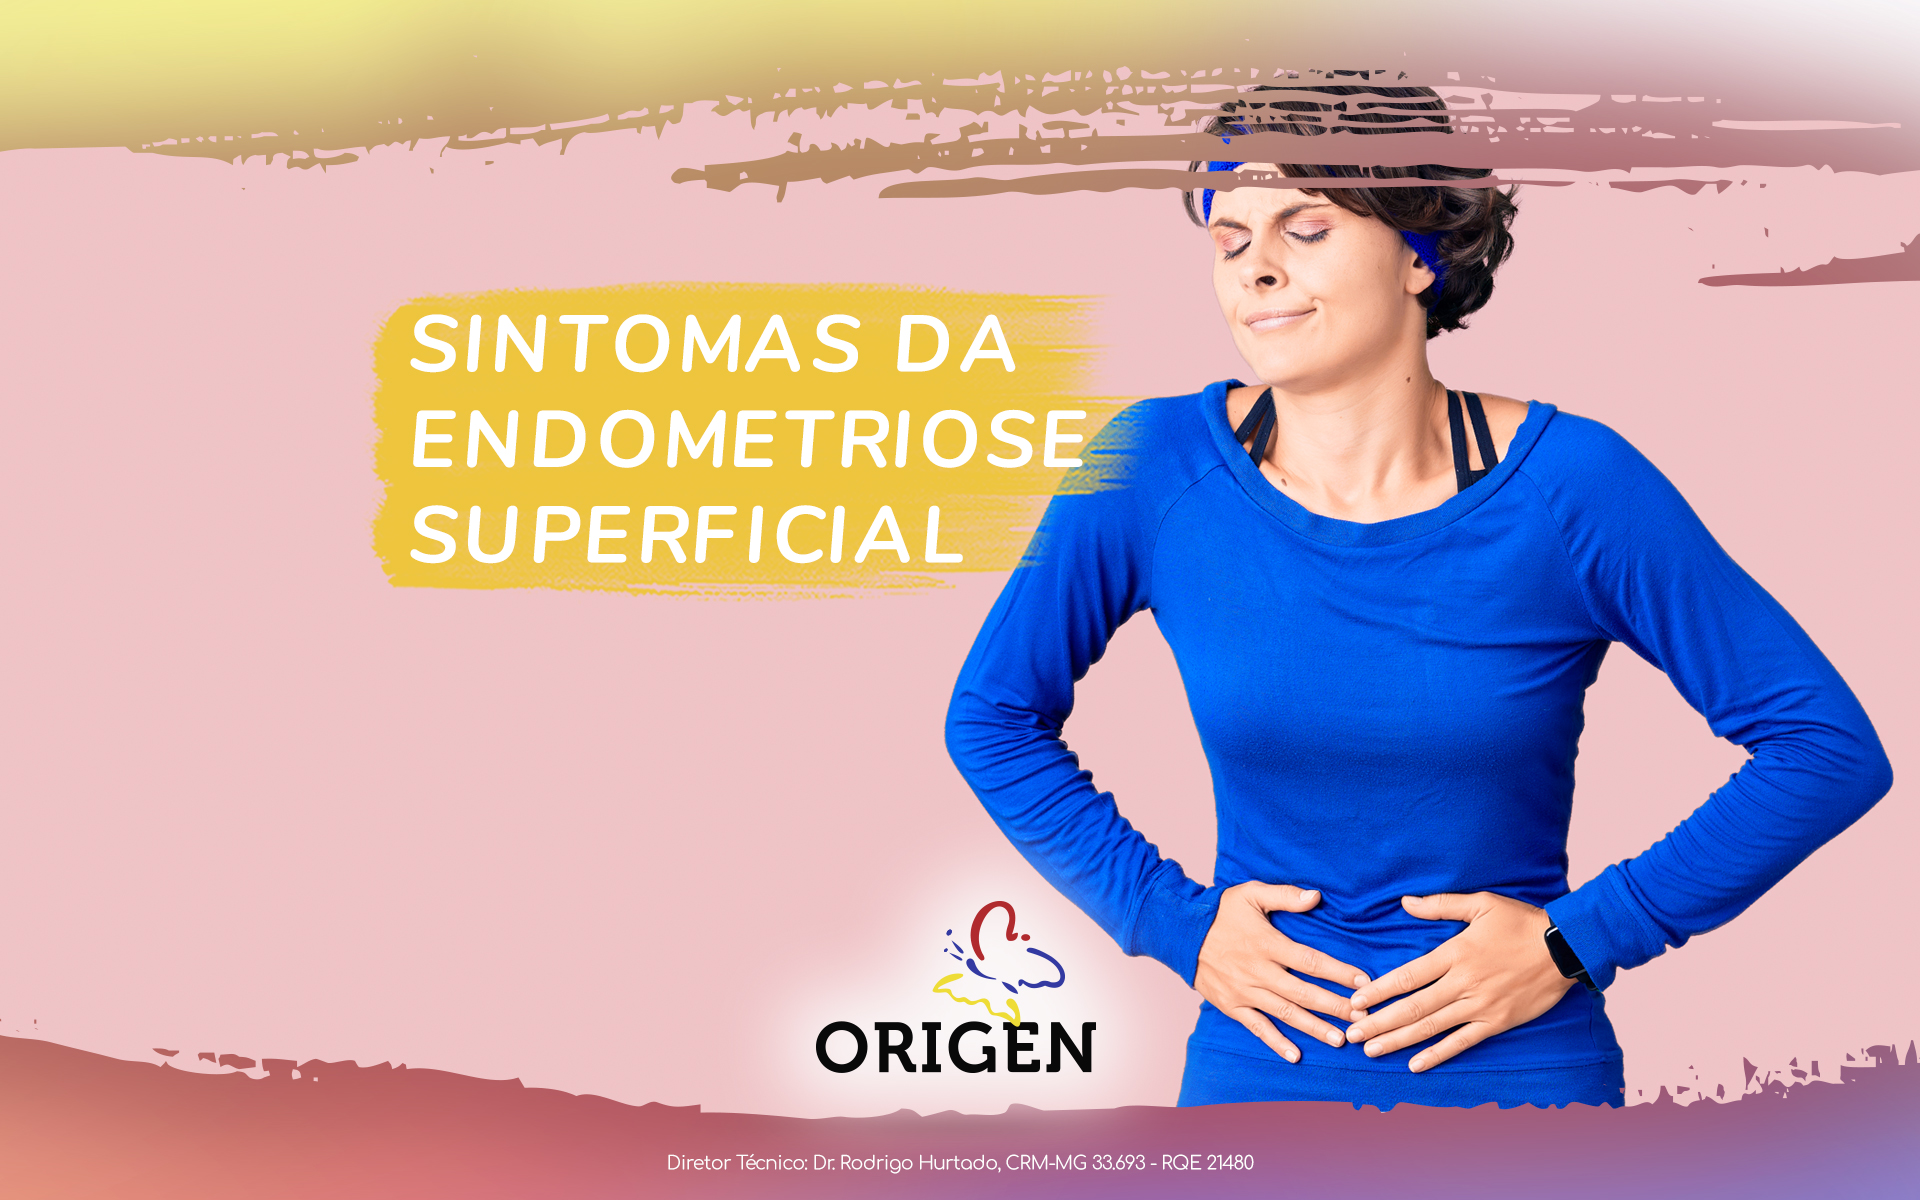 Sintomas da endometriose superficial